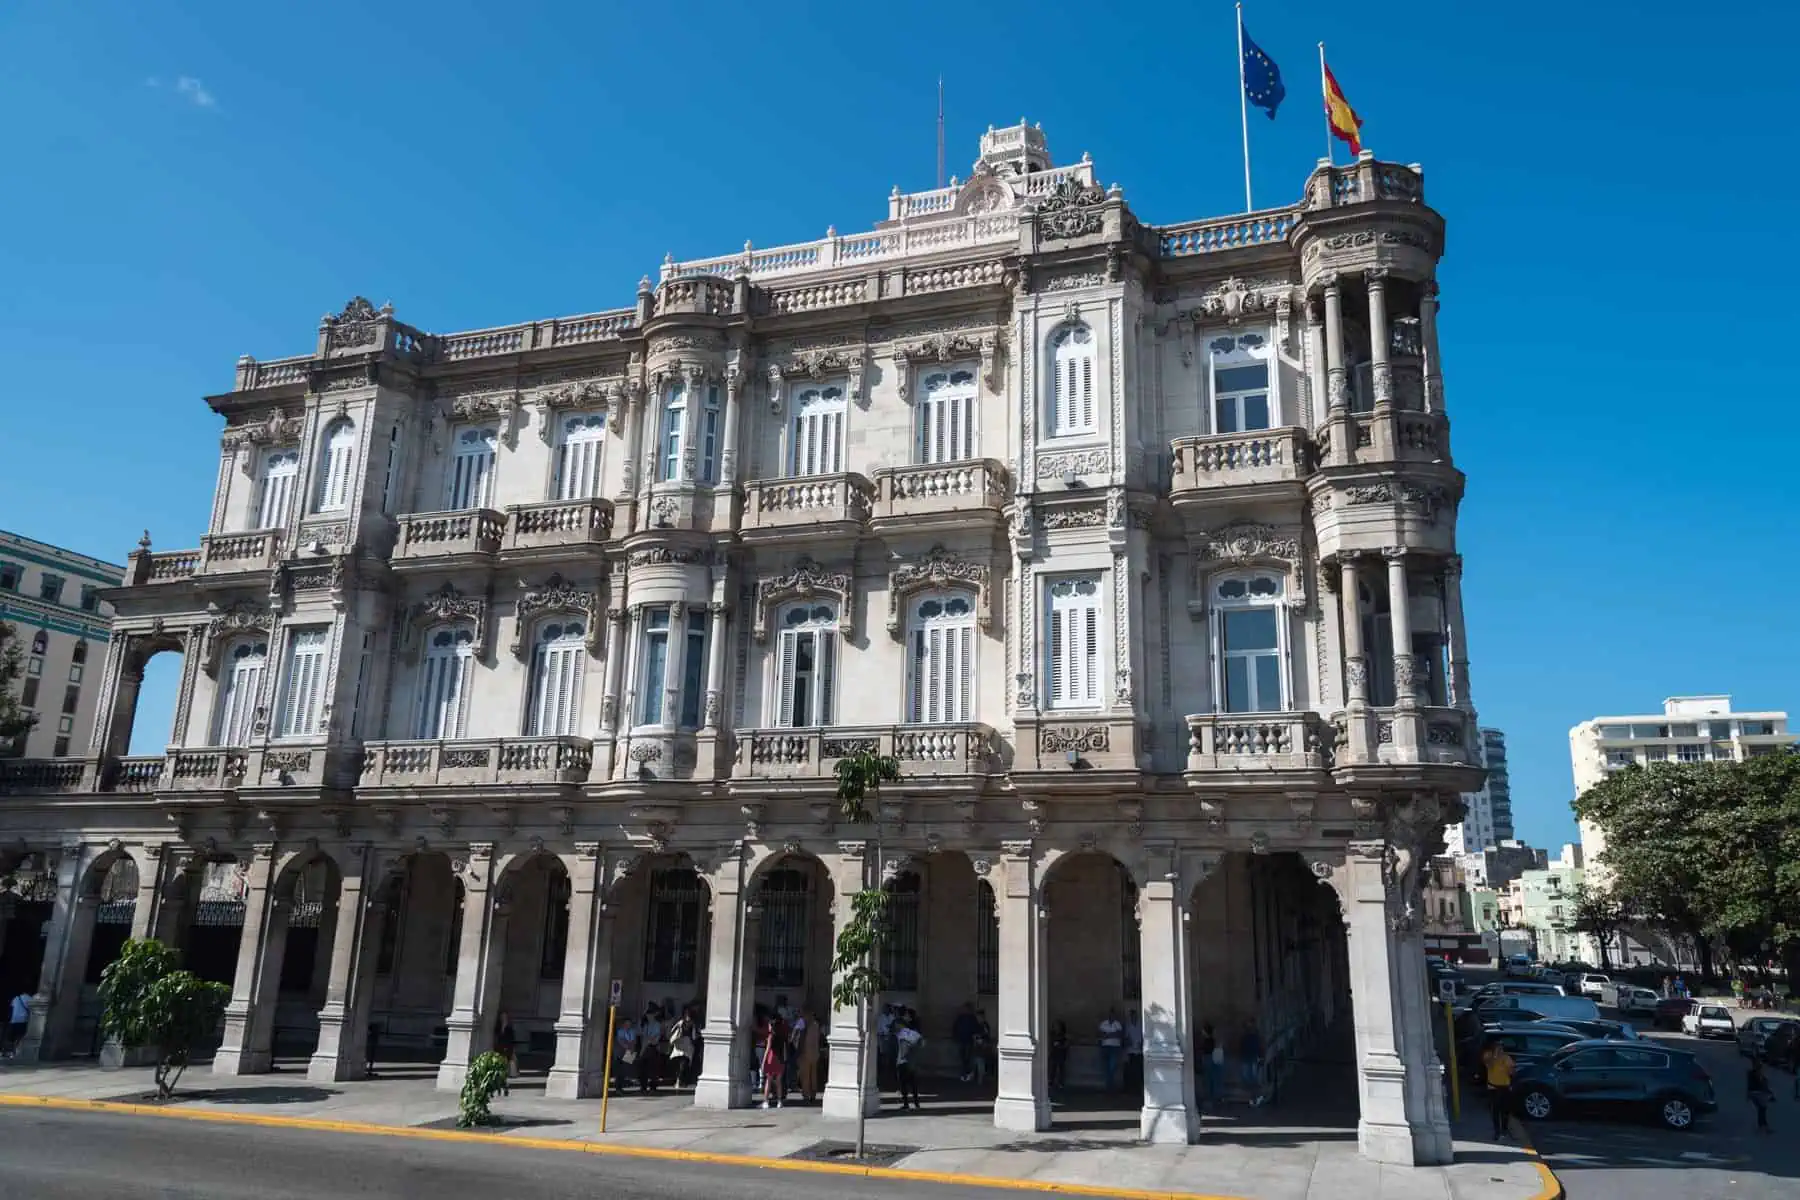 Consulta Online de Expedientes del Registro Civil Consular Español en Cuba